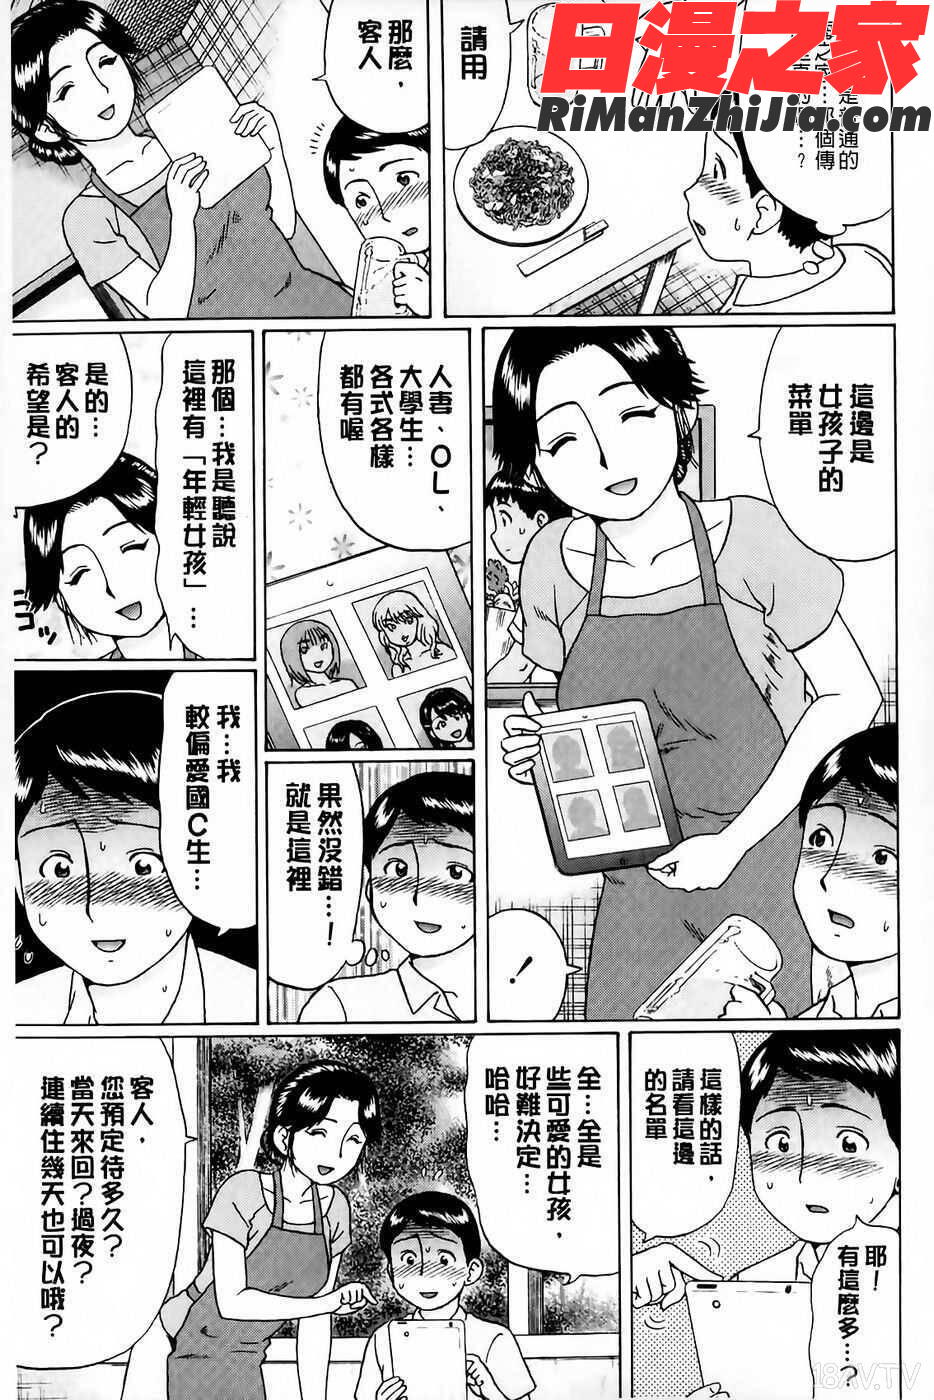 童貞卒業漫画 免费阅读 整部漫画 62.jpg